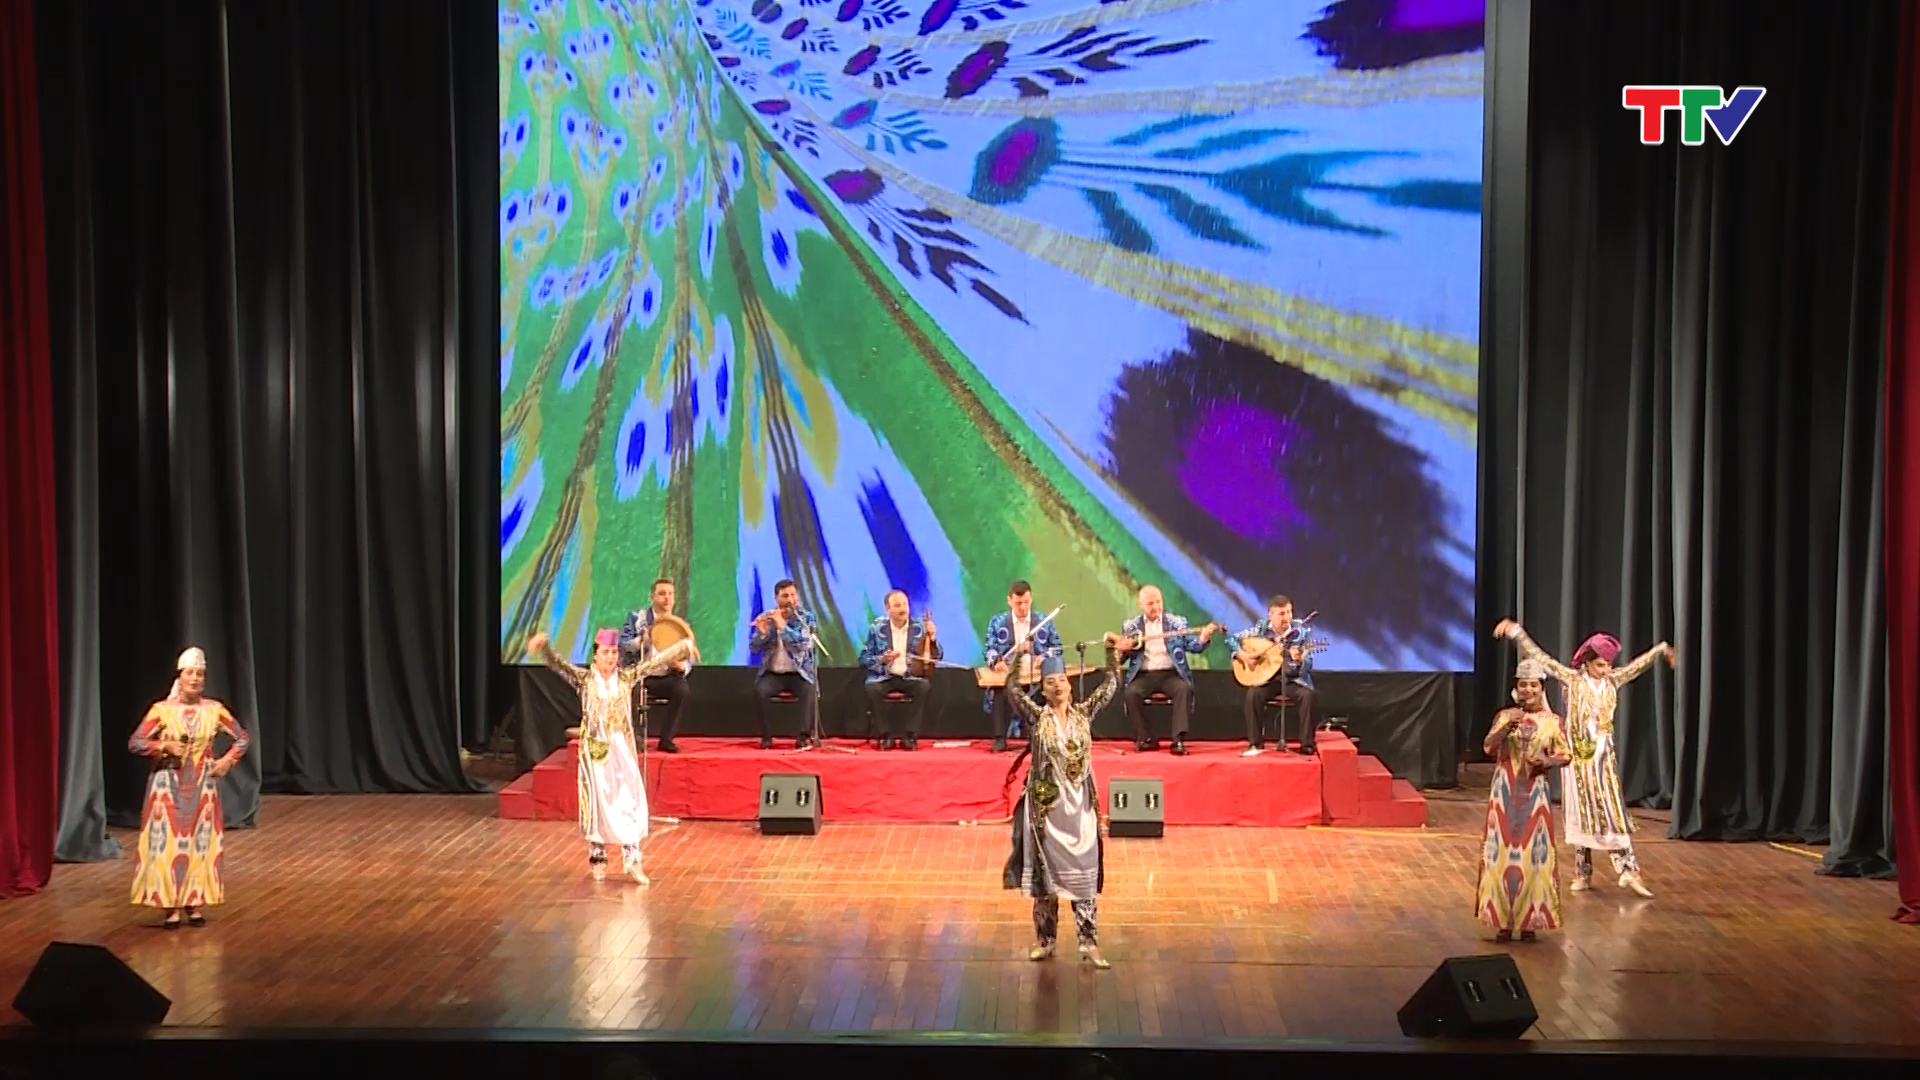 Hơn 30 nghệ sỹ của Đoàn nghệ thuật Uzbekistan đã có chương trình biểu diễn tại Thanh Hóa. 15 tiết mục đặc sắc, mang đậm màu sắc dân tộc, âm hưởng dân gian Uzbekistan